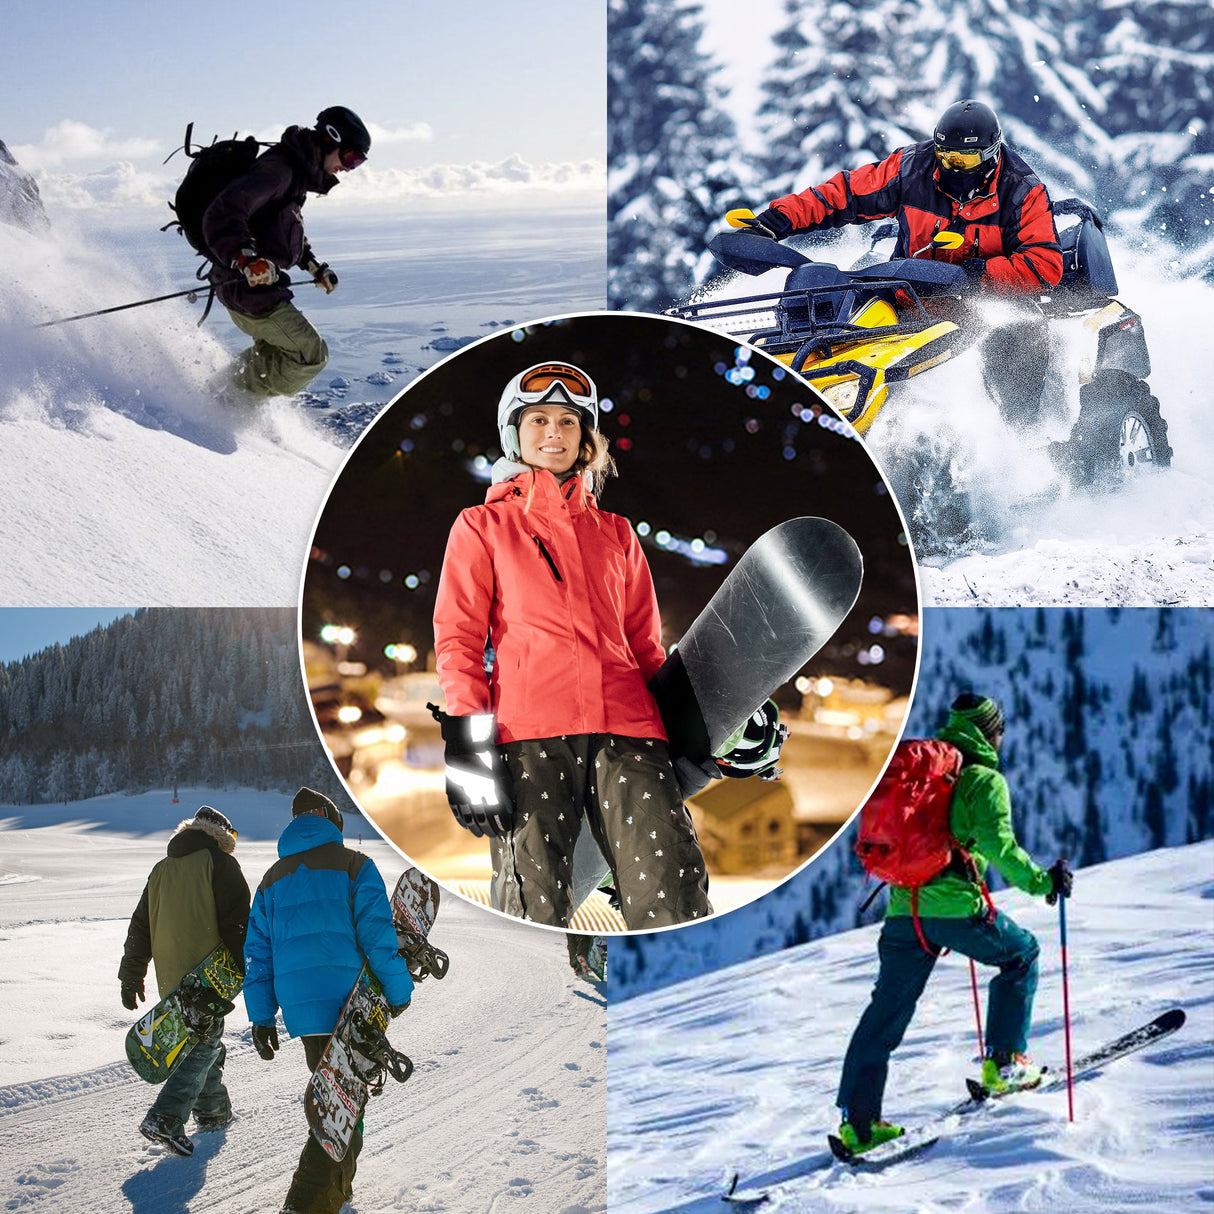 JEKOSEN White Ski Gloves Waterproof Touchscreen Snowboard Cold Weather Keep Warm Snow Gloves - GexWorldwide